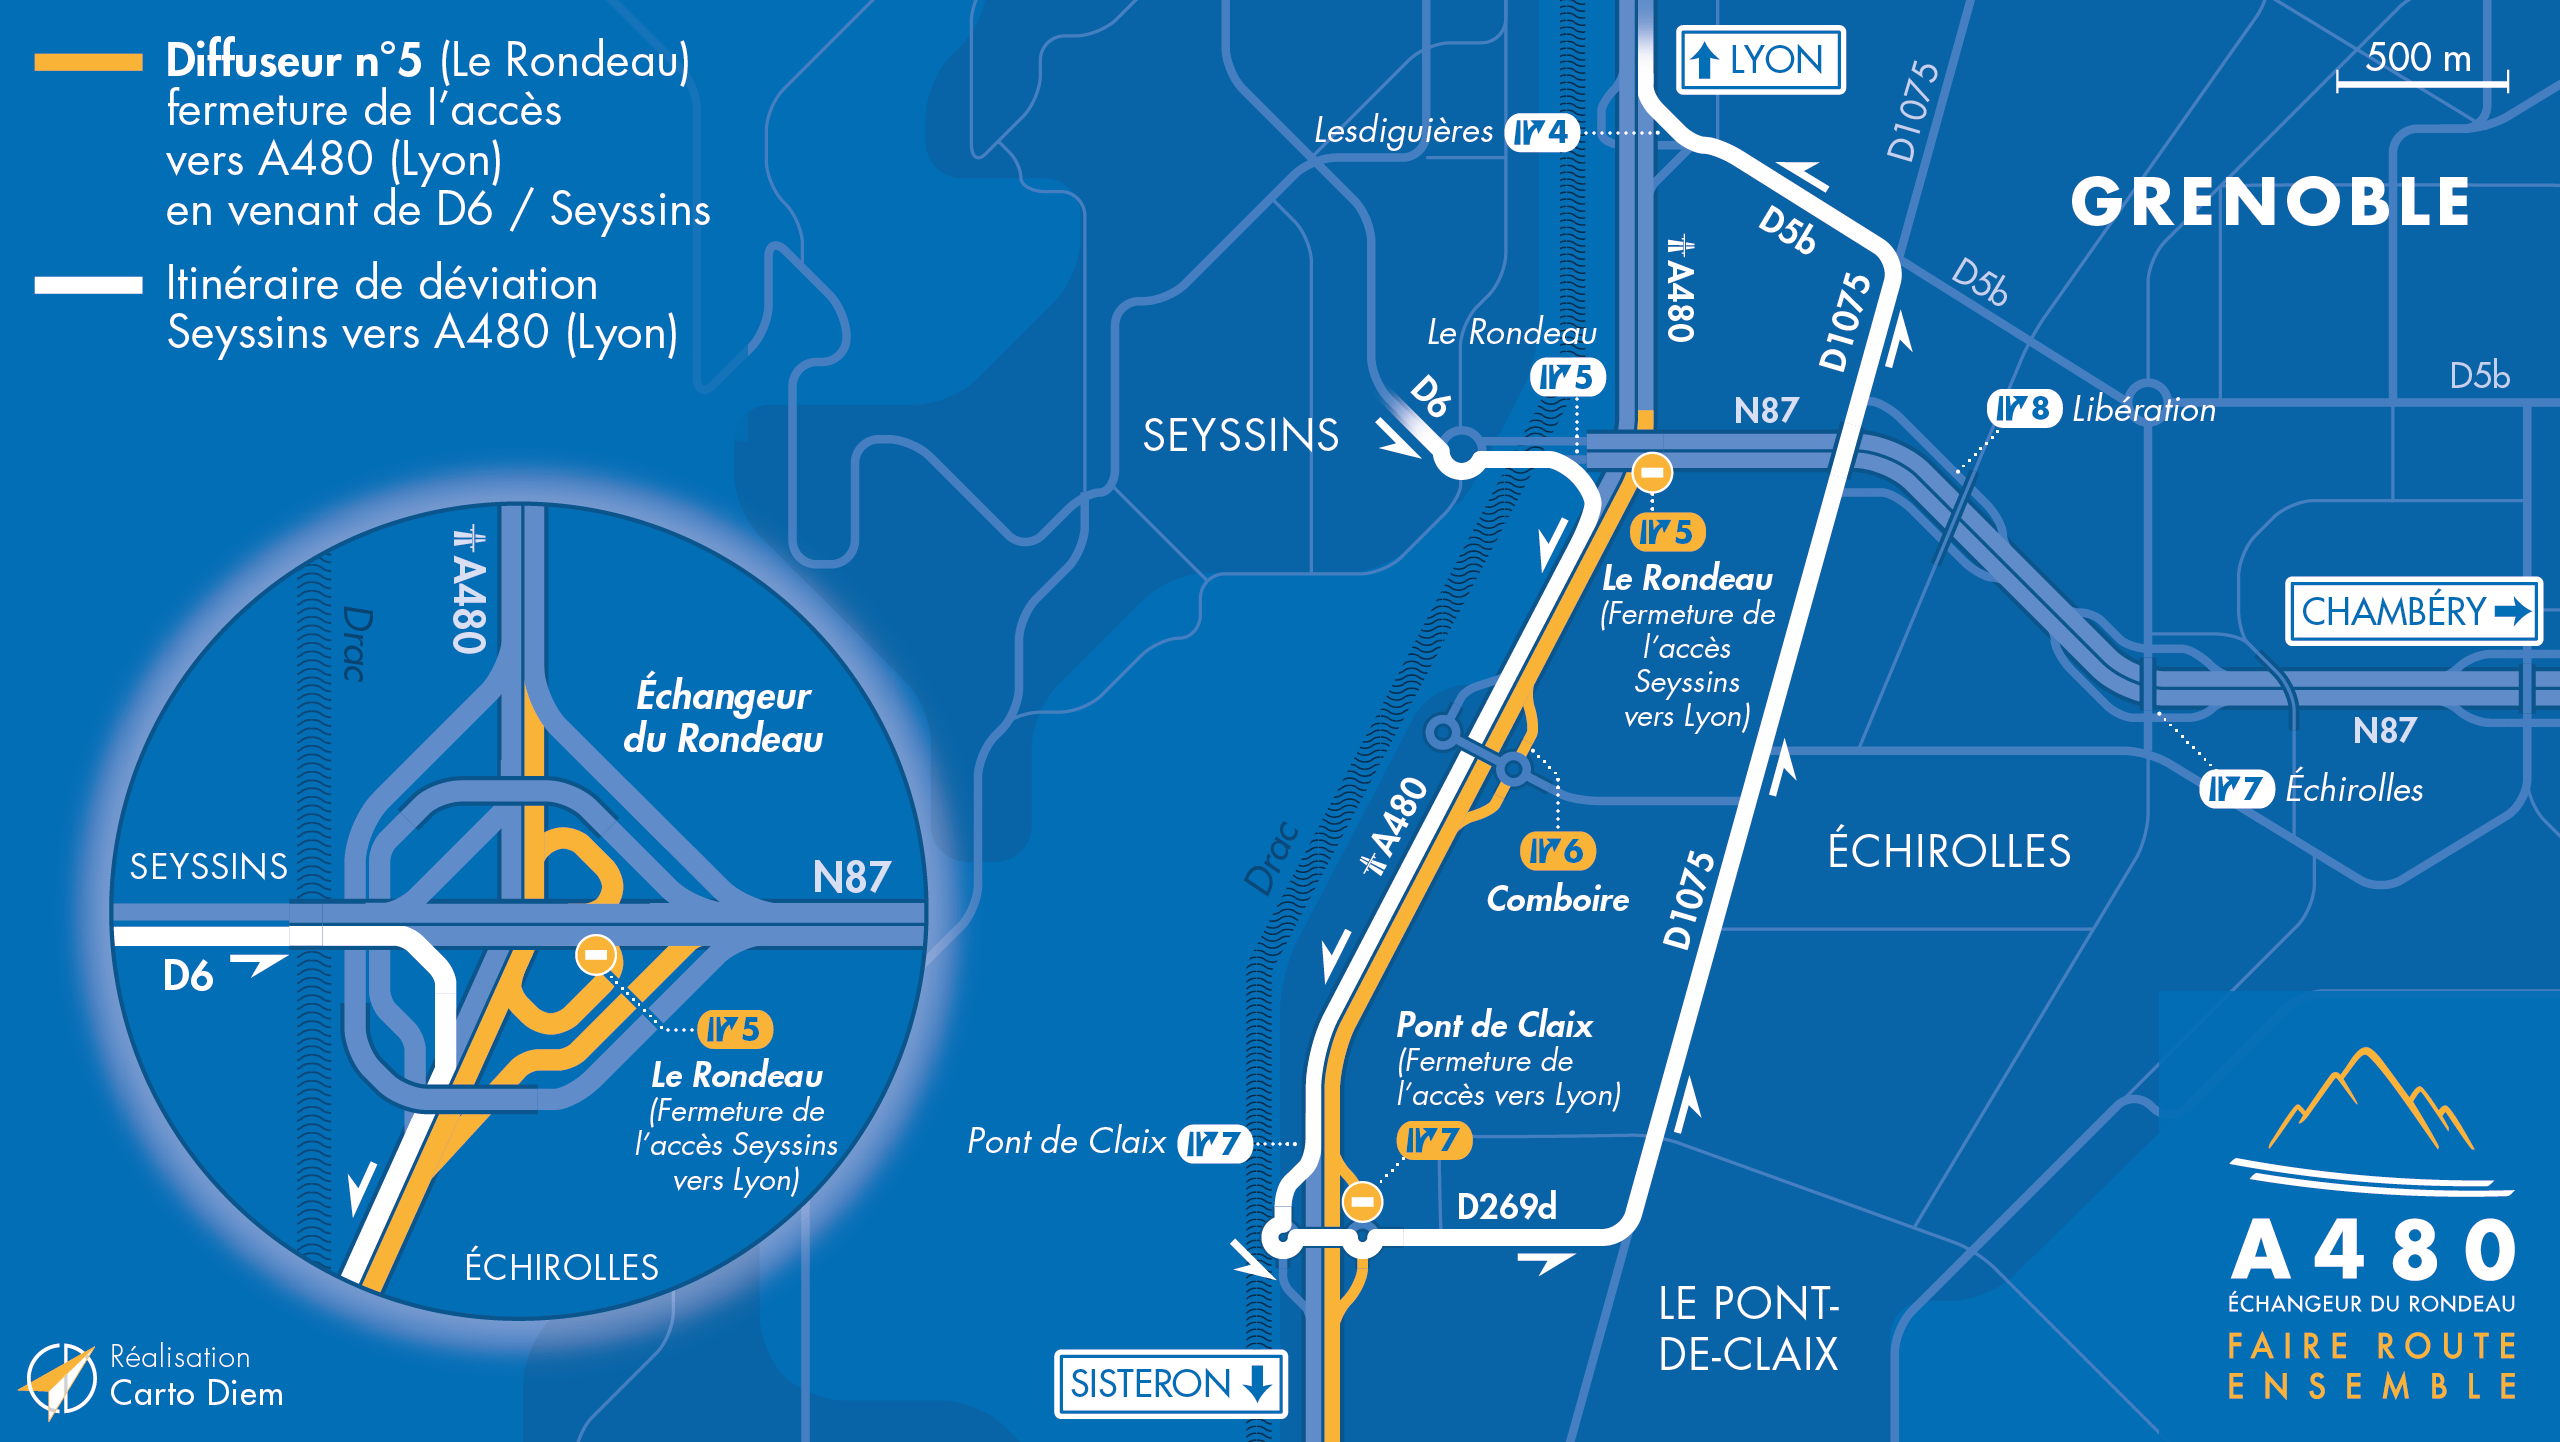 Carte alternative de déviation suite à la fermeture de l'autoroute A480 et la nationale N85 entre Claix et le Rondeau en direction de Lyon